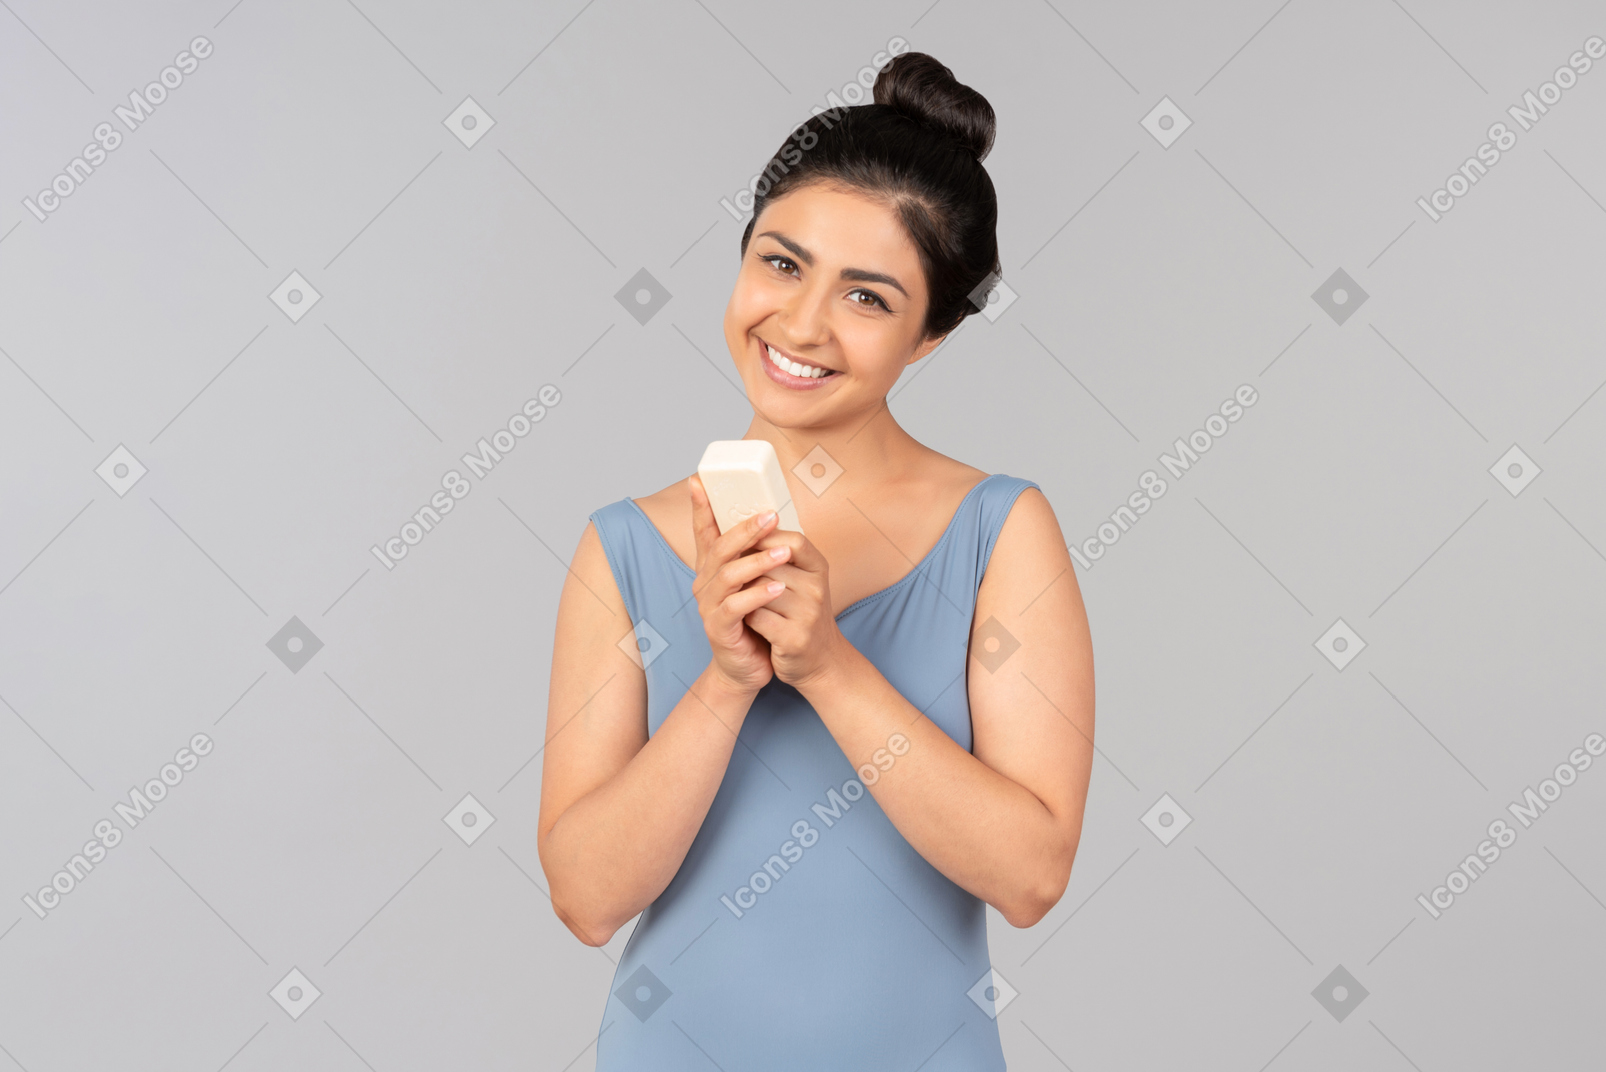 Mulher indiana nova de sorriso que prende o frasco cosmético